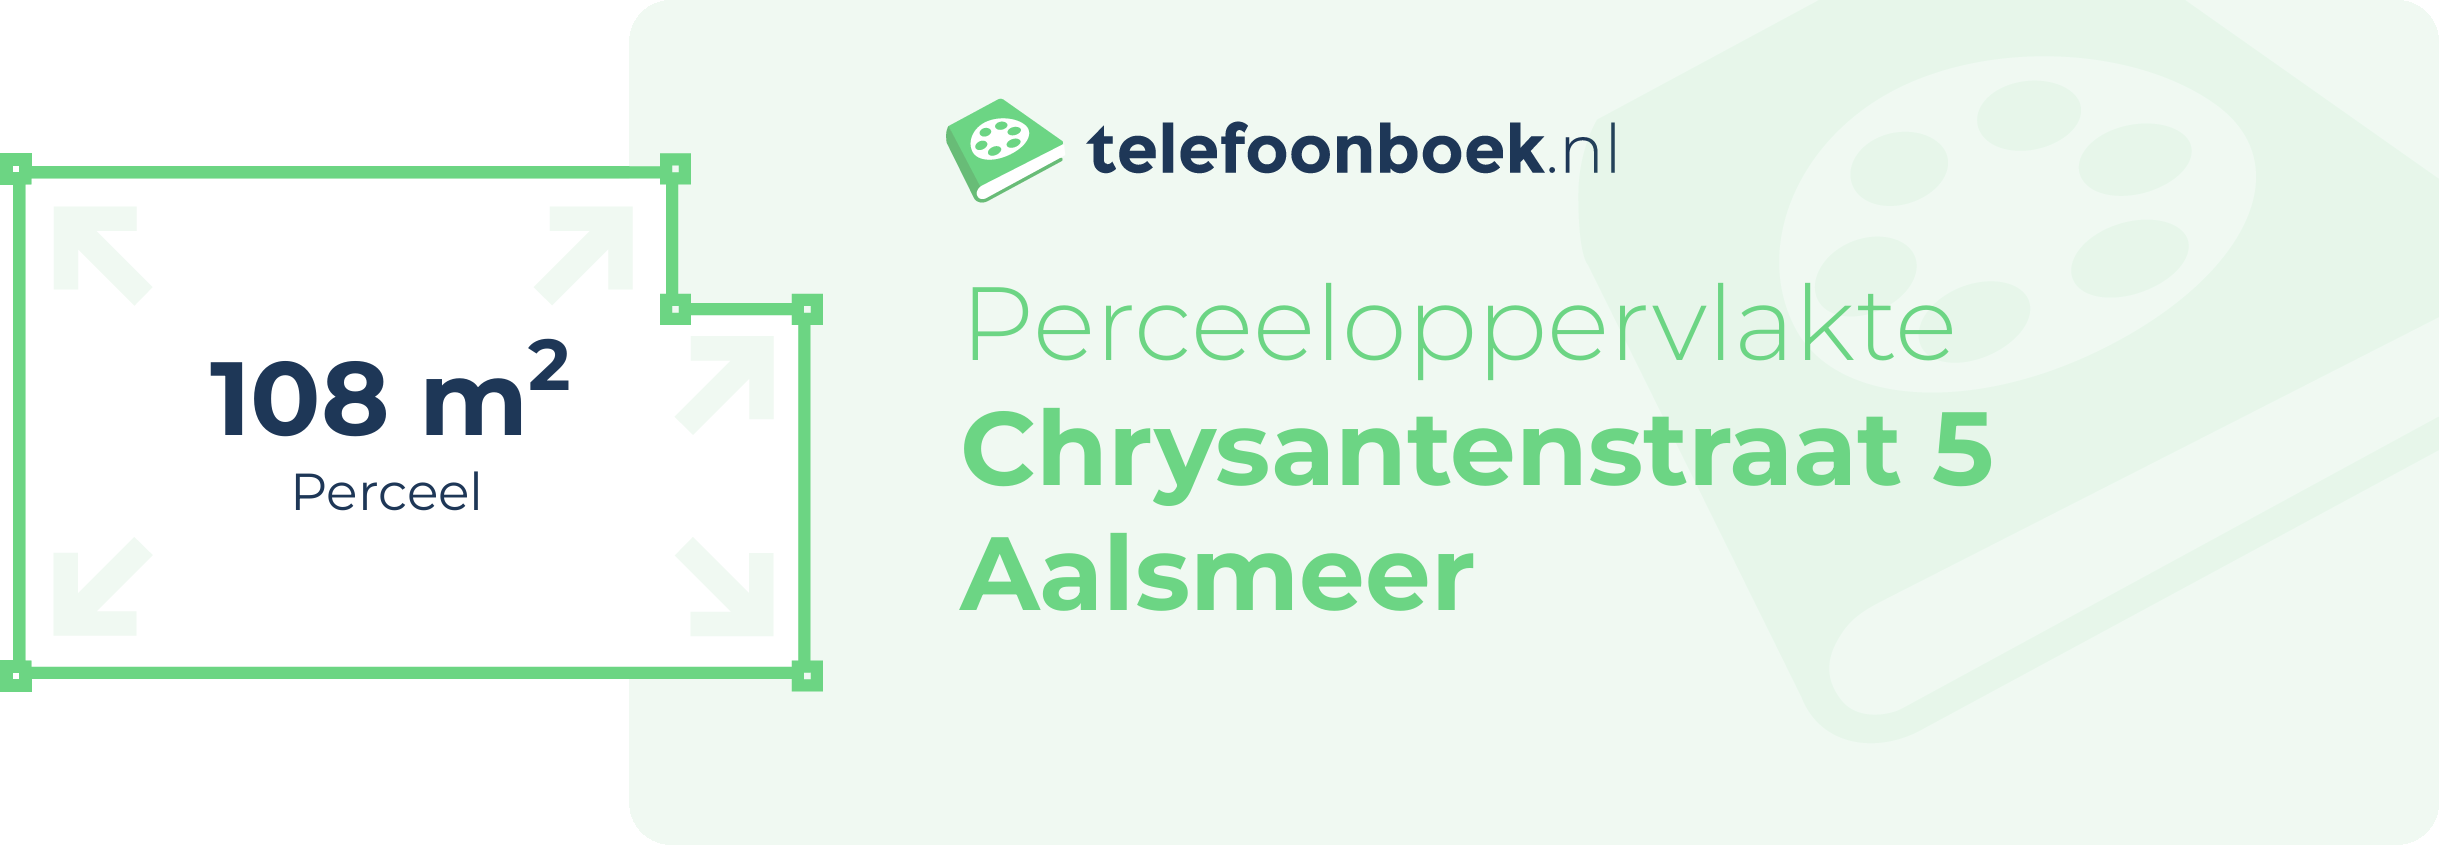 Perceeloppervlakte Chrysantenstraat 5 Aalsmeer